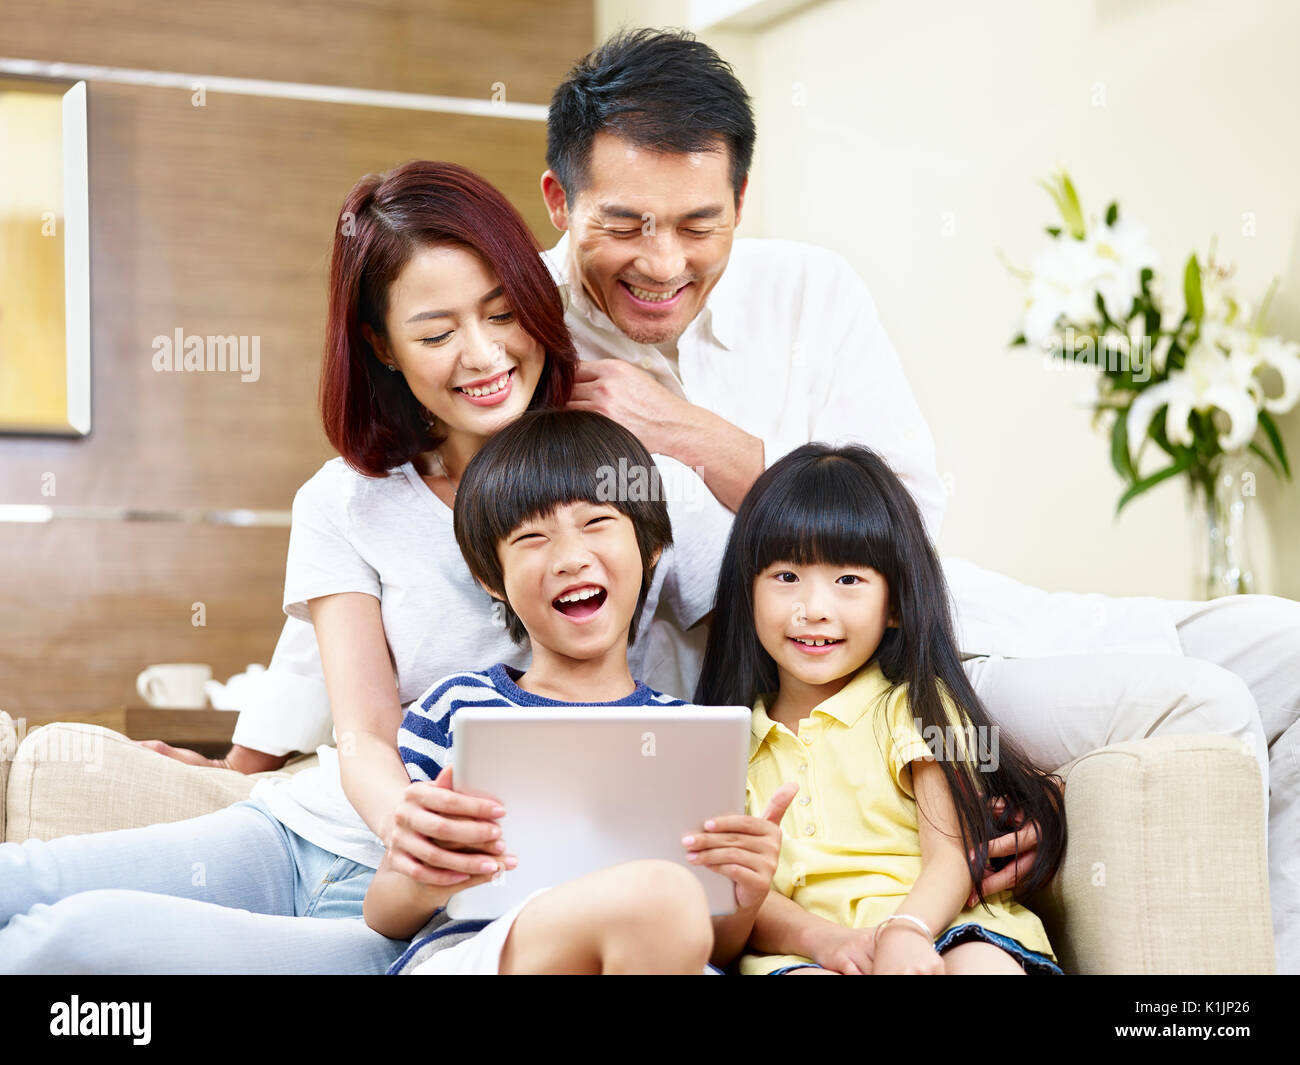 Les parents asiatiques et les enfants sitting on couch having fun with digital tablet. Banque D'Images